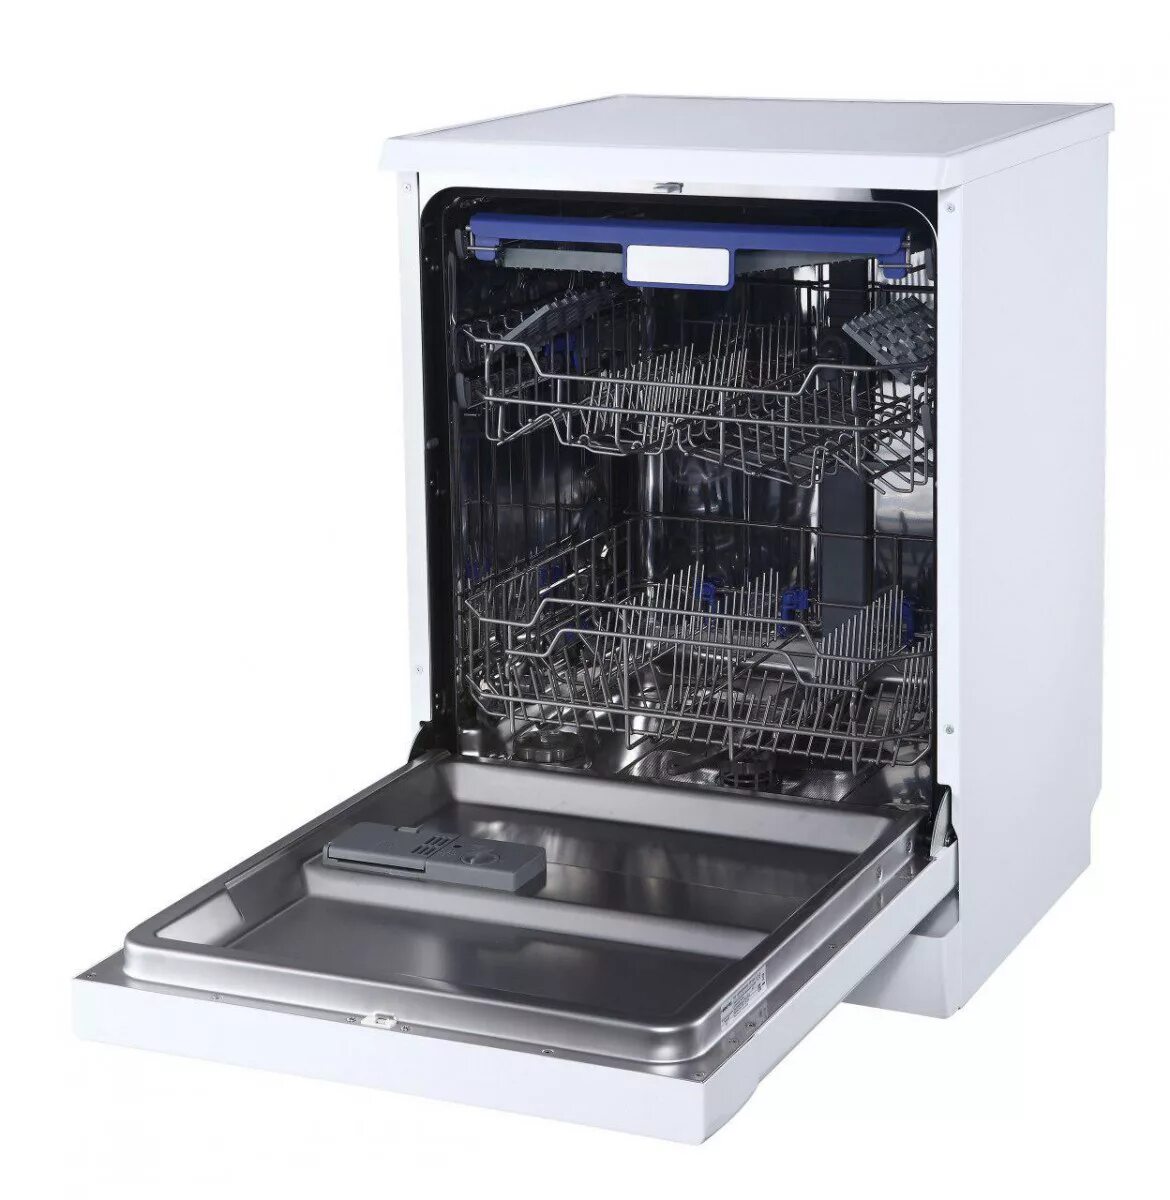 Посудомоечная машина HIBERG f68 1430 w. Посудомоечная машина HIBERG i46 1030. Посудомоечная машина (60 см) HIBERG F 68 1430 W. Посудомоечная машина HIBERG i49 1032.